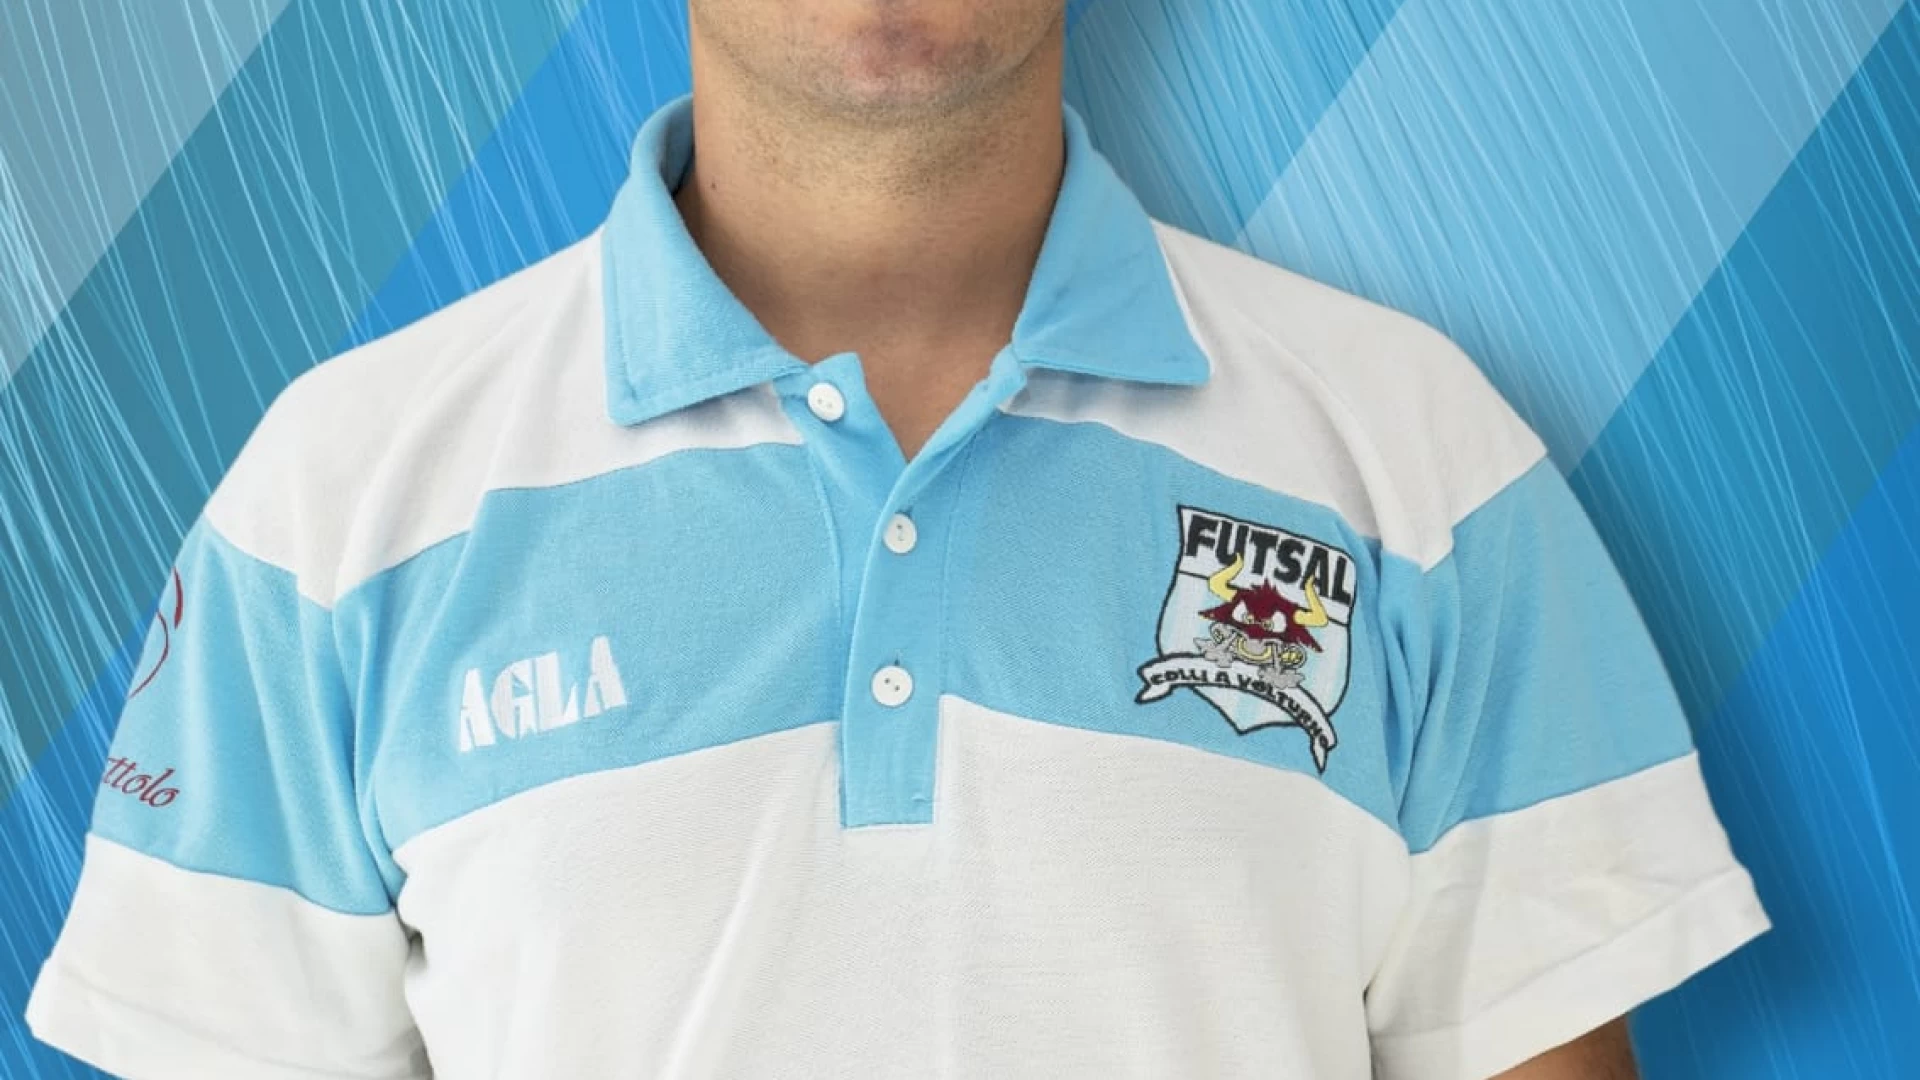 Calcio a 5 serie C1: Gianluca Iannicelli è il nuovo allenatore della Futsal Colli a Volturno.